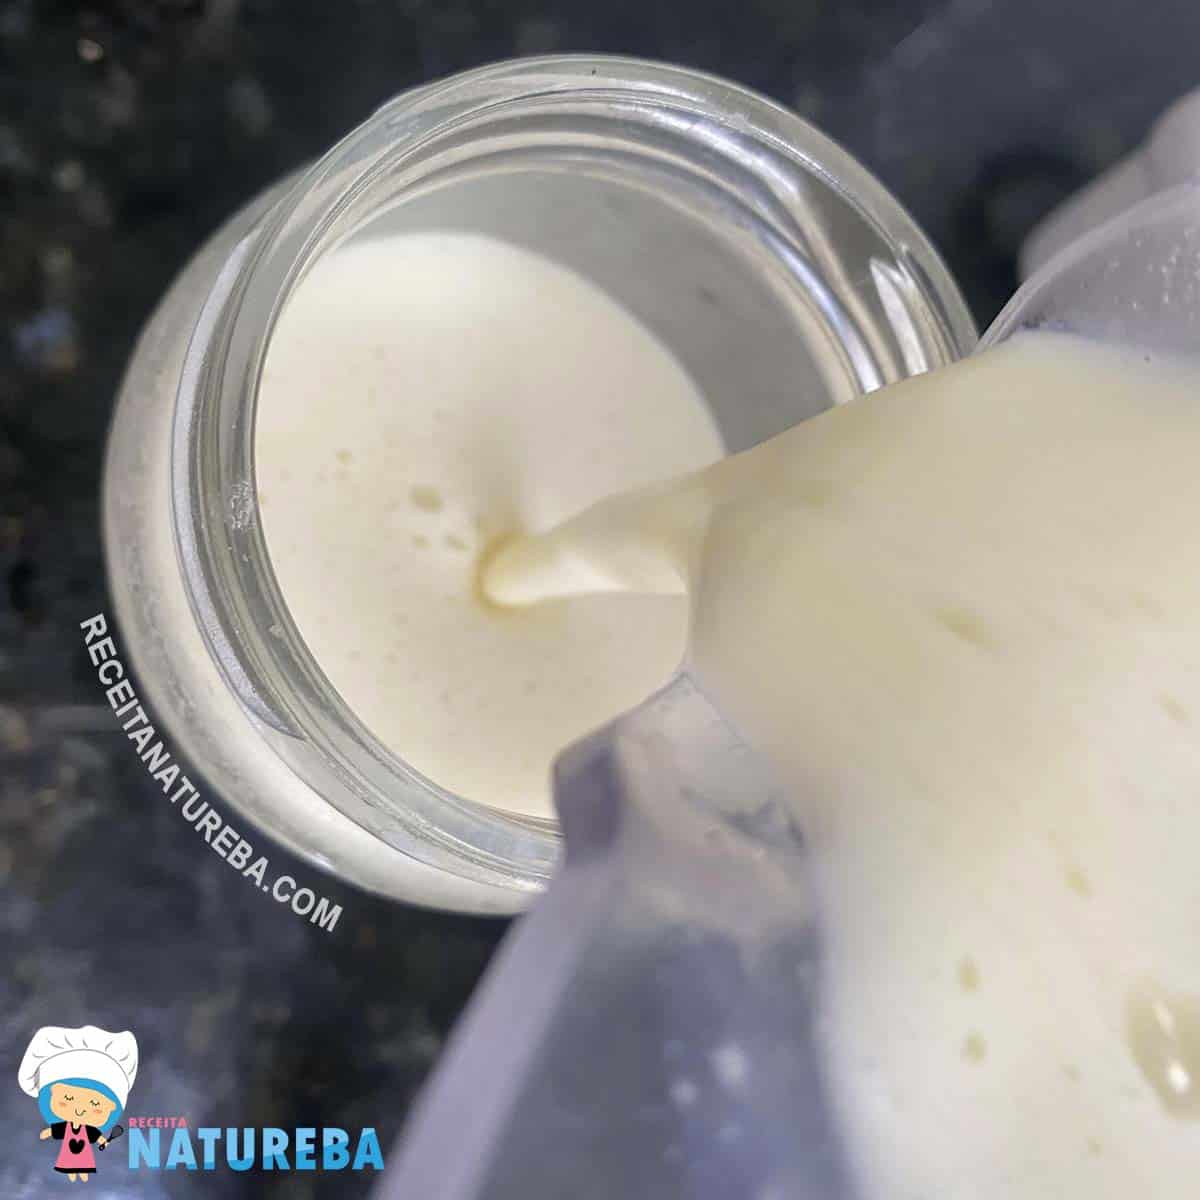 transferindo o leite condensado para um pote de vidro